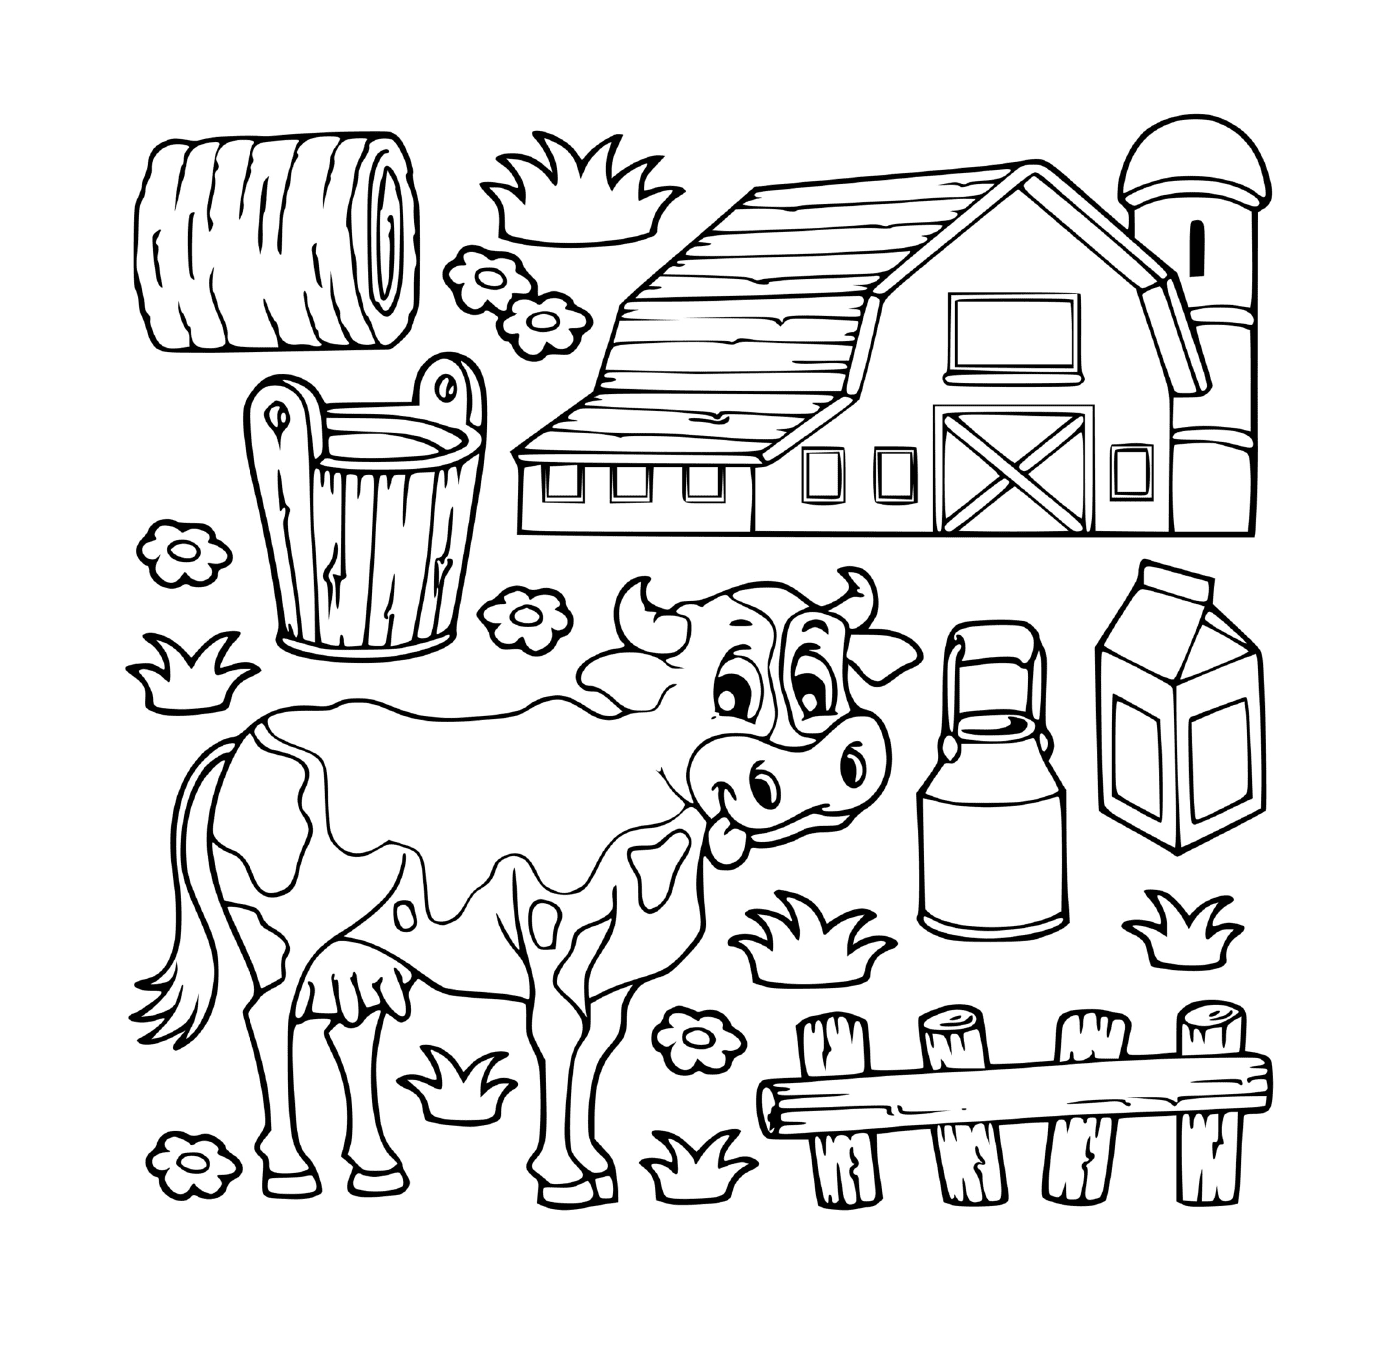   Vache laitière dans une ferme 